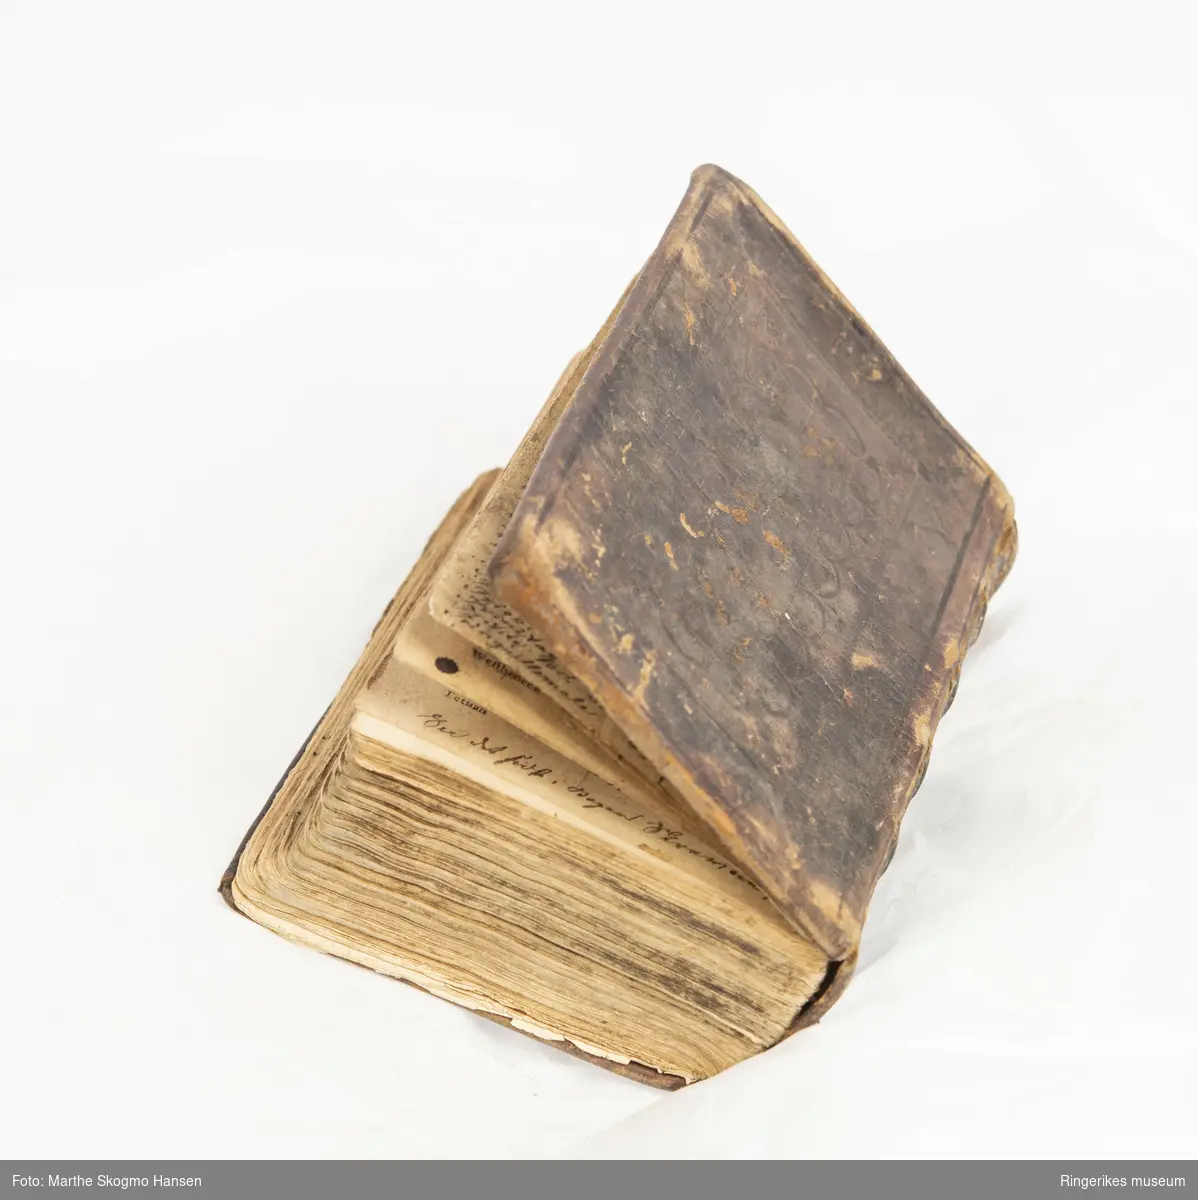 Trykket i København i 1774. 900 sider. Permer trukket med mønsterpreget lær. 